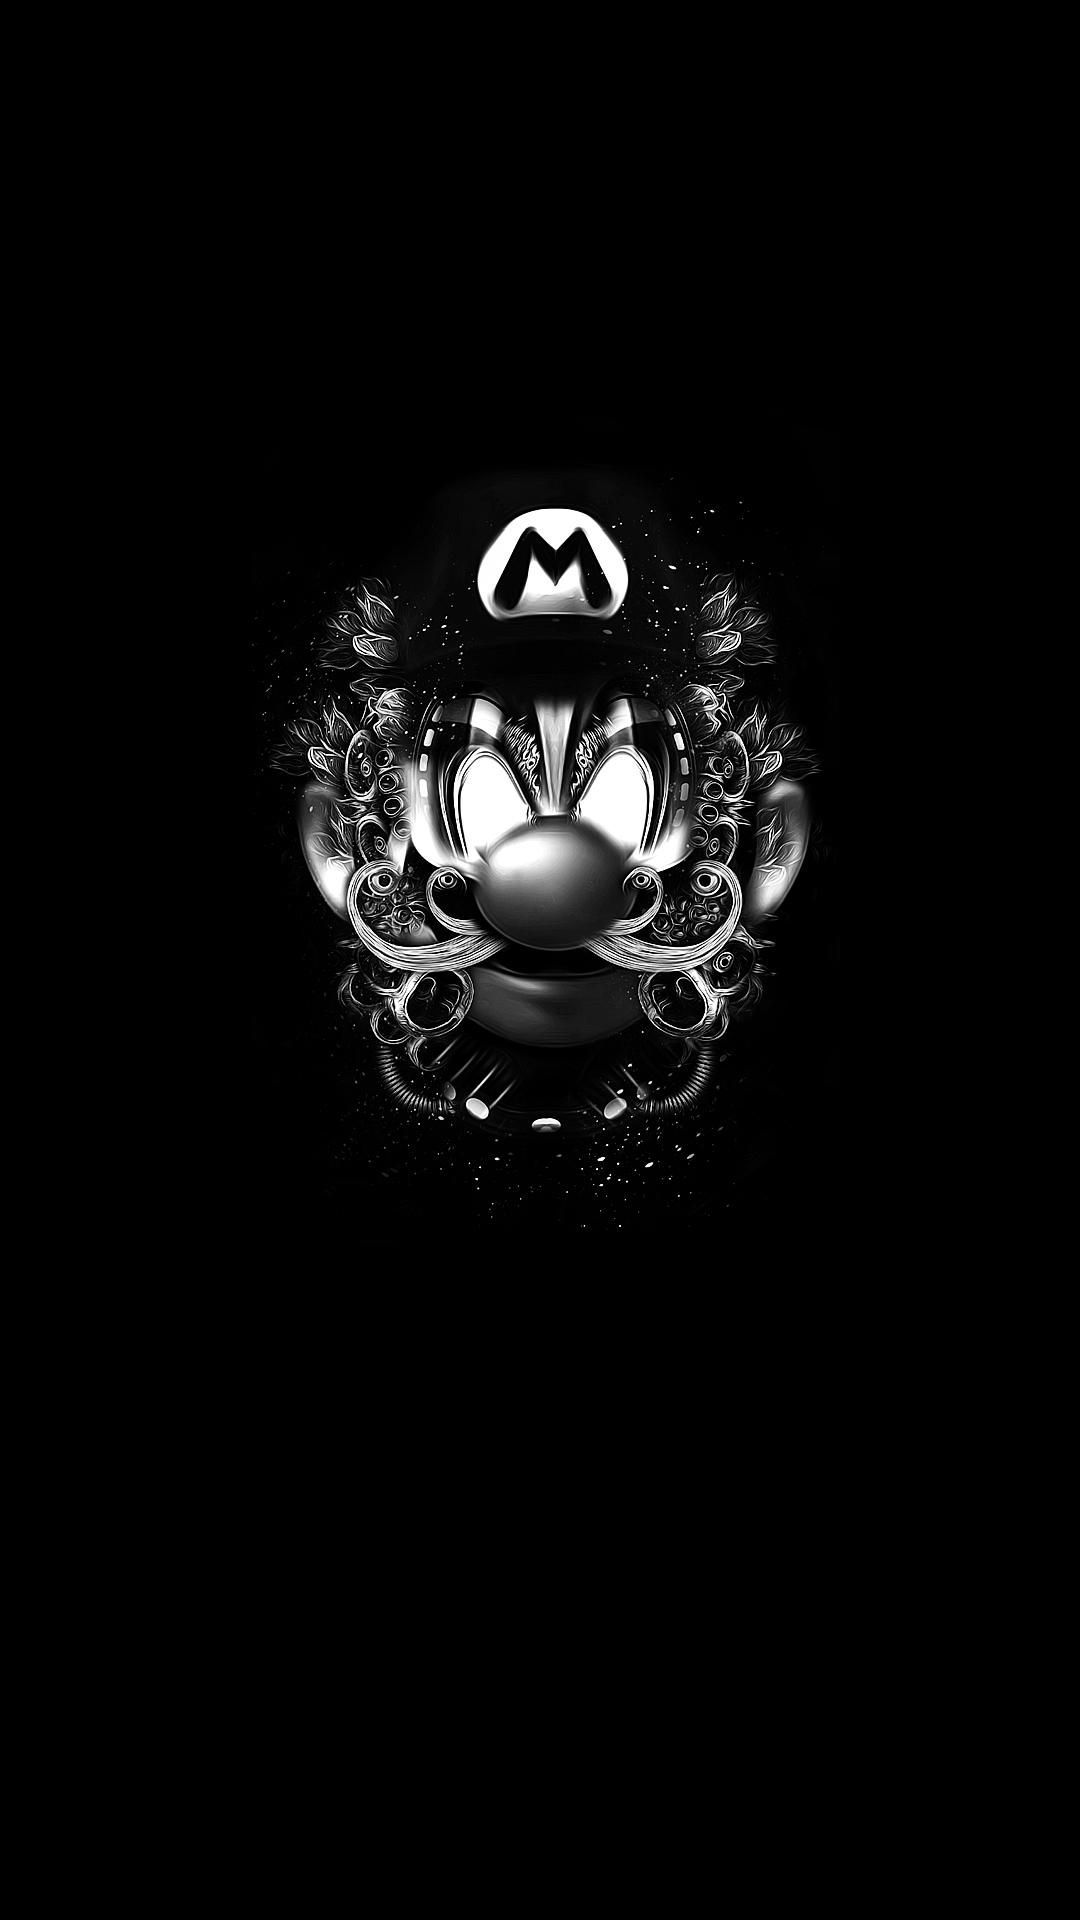 Super Mario. R.a.b